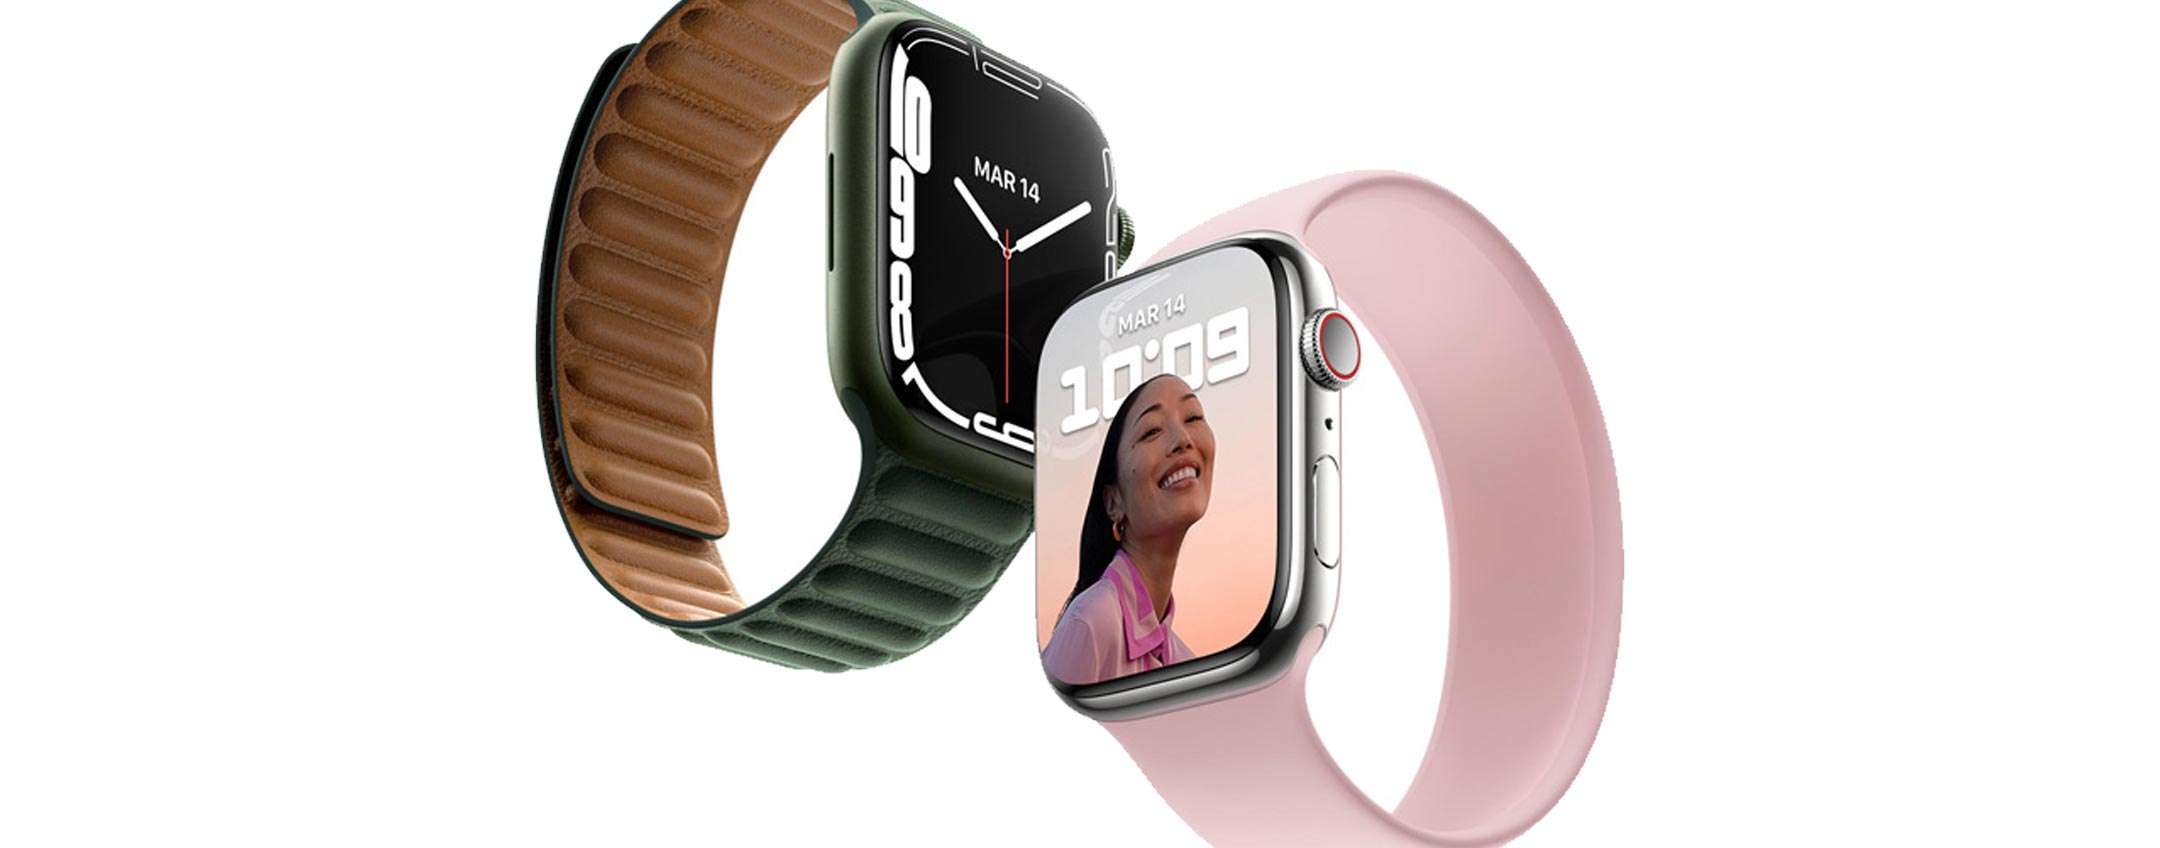 Apple Watch: l'azienda studia il tracking dell'ipertensione